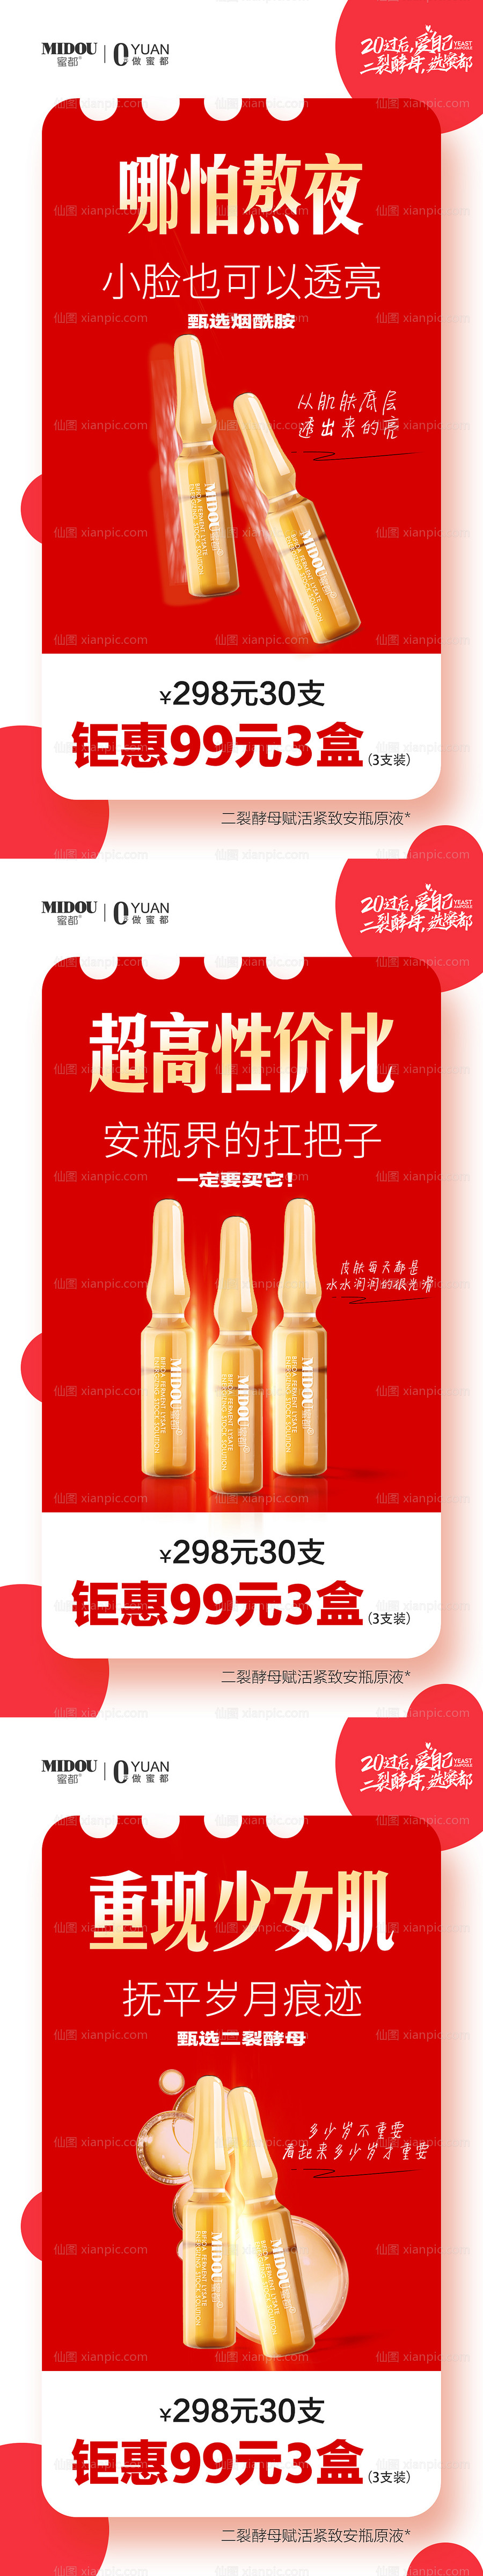 素材乐-安瓶化妆品微商产品功效系列海报